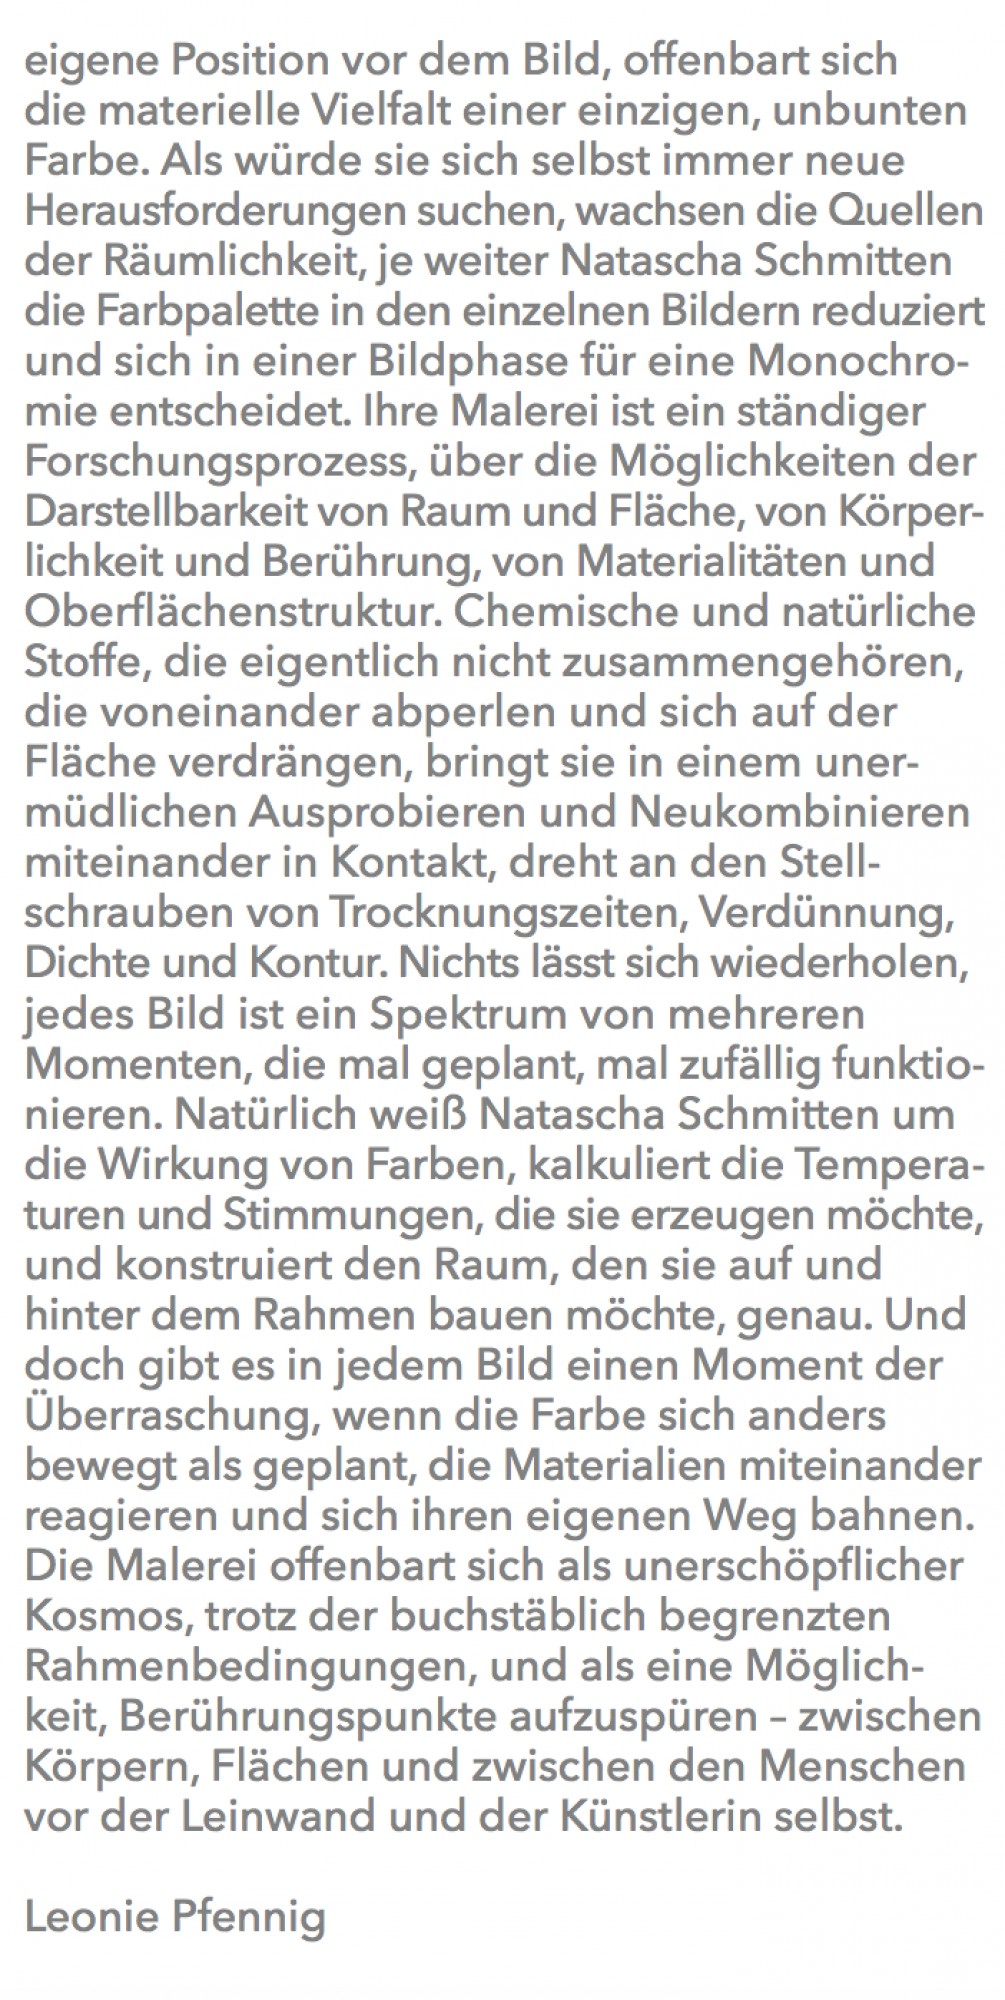 Natascha Schmitten - Fluide Körper, Leonie Pfennig, 2020